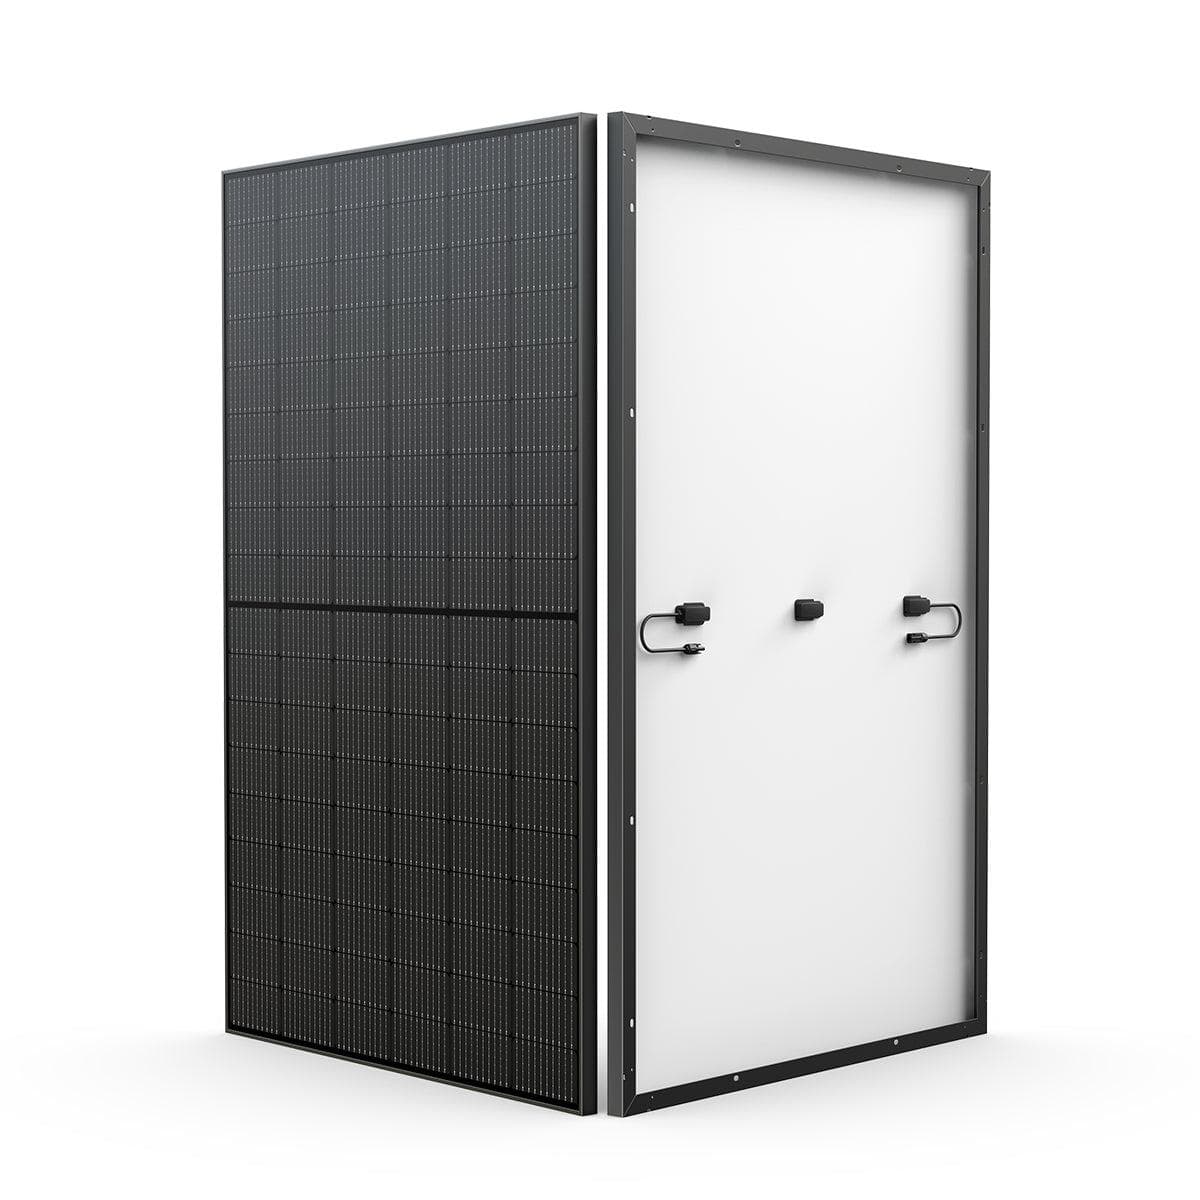 Ecoflow 2x 400W Rigid Solar Panel with 4x Mounting Feet